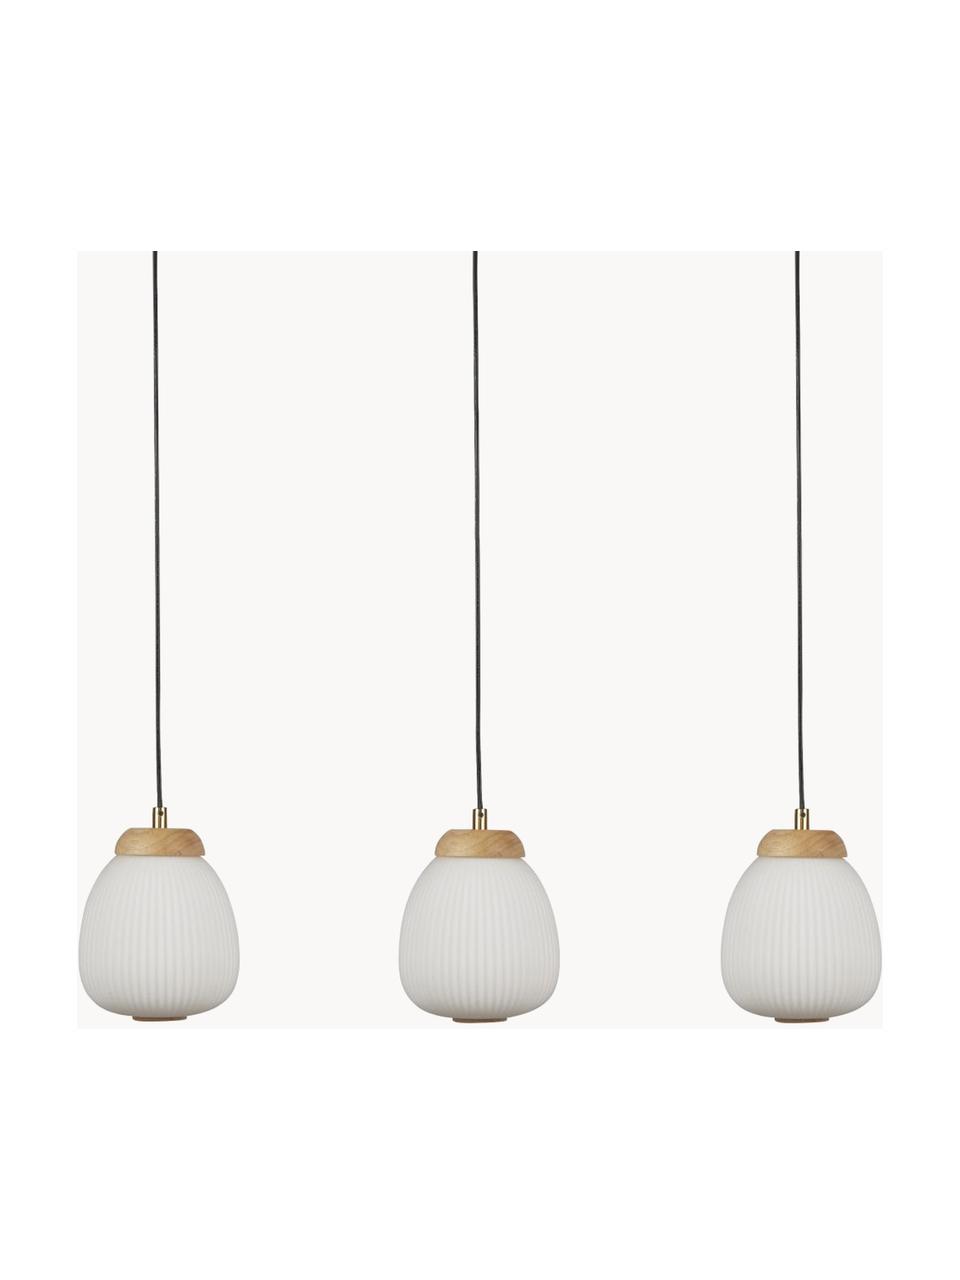 Cluster hanglamp Ella, Decoratie: hout, Gebroken wit, eucalyptushout, B 79 x H 20 cm